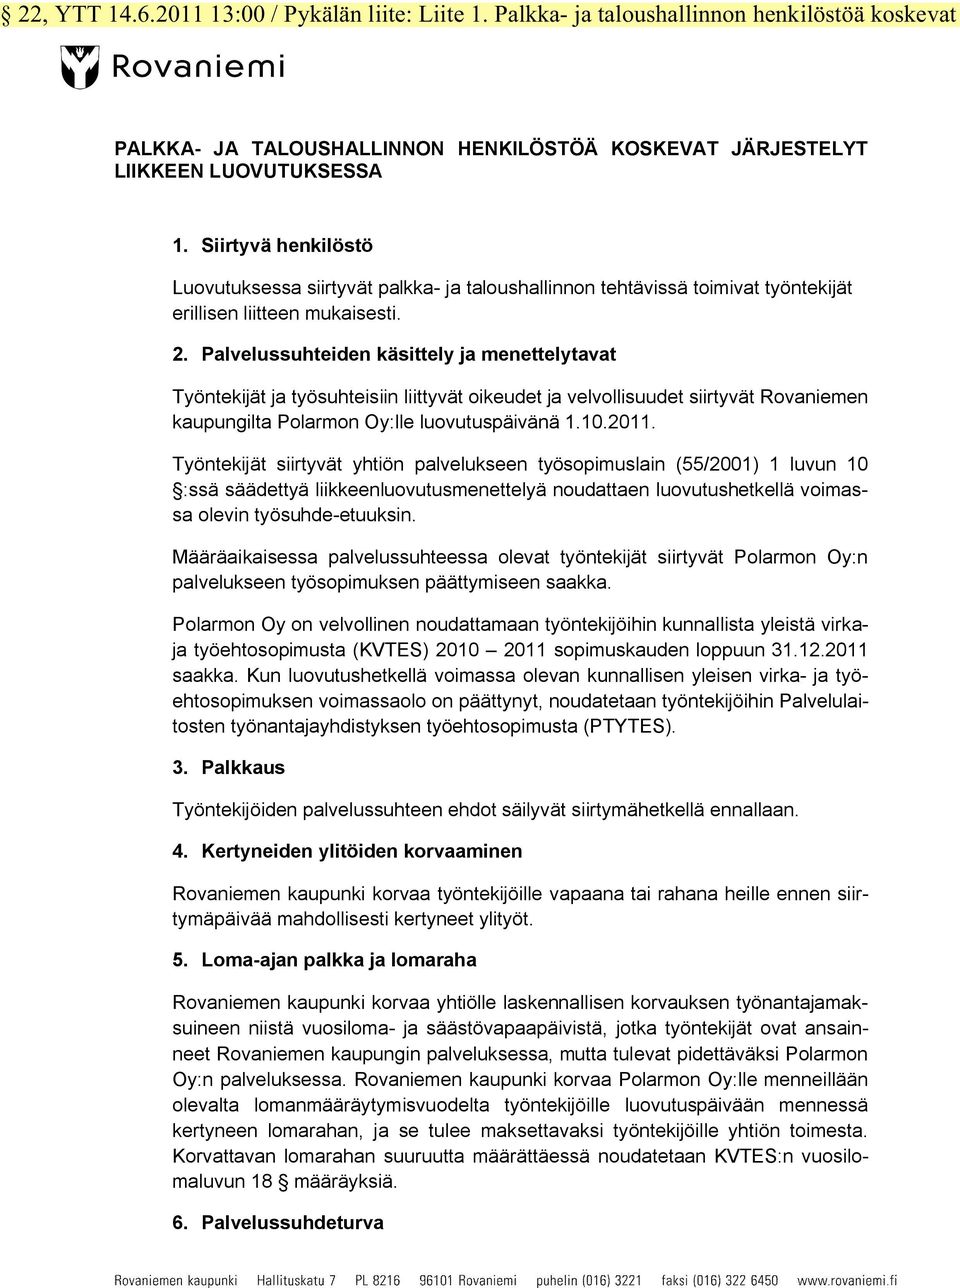 Palvelussuhteiden käsittely ja menettelytavat Työntekijät ja työsuhteisiin liittyvät oikeudet ja velvollisuudet siirtyvät Rovaniemen kaupungilta Polarmon Oy:lle luovutuspäivänä 1.10.2011.